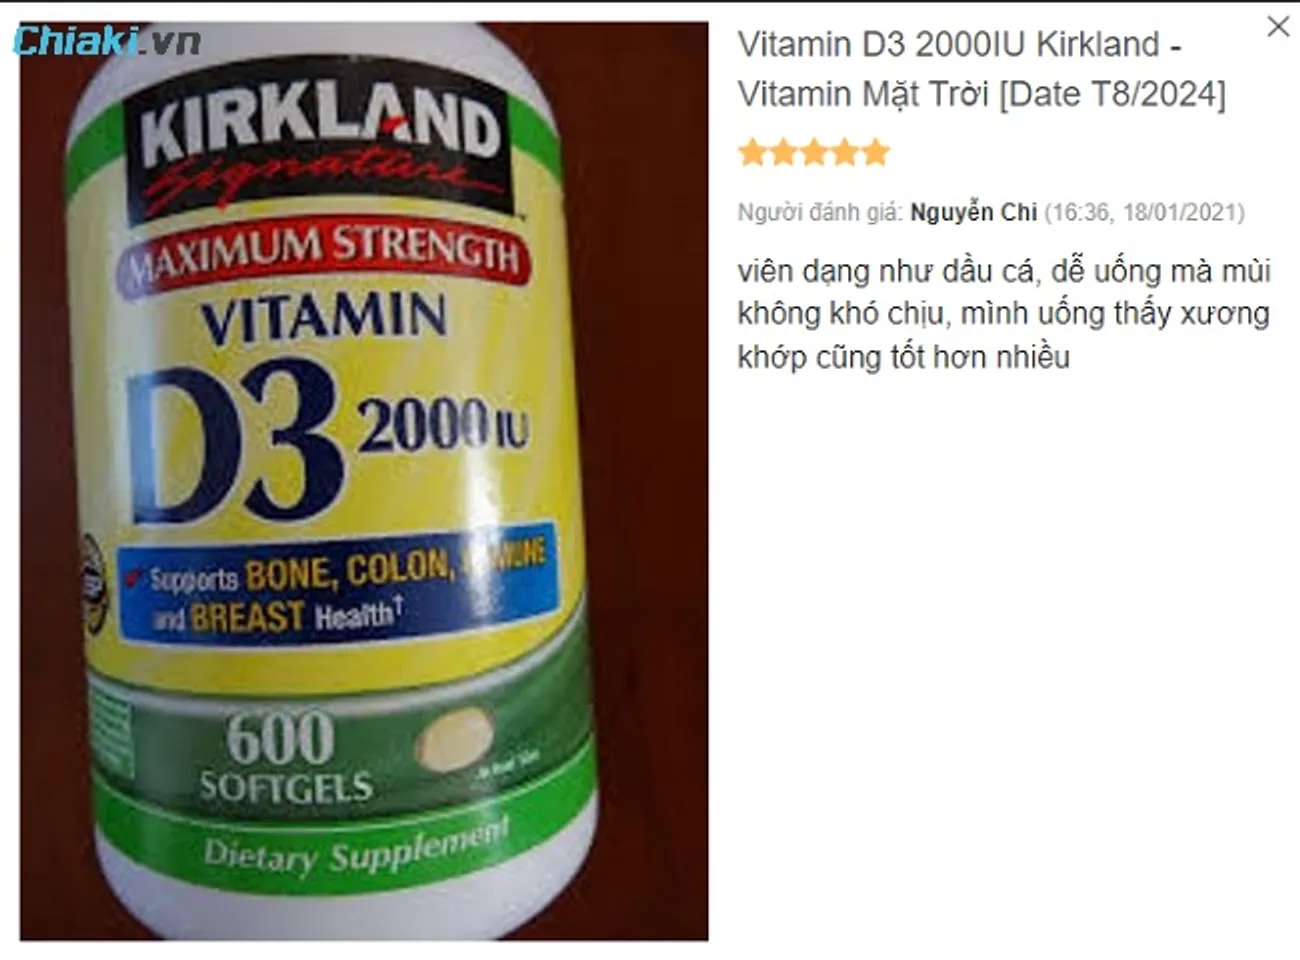 Review Vitamin D3 2000 IU Kirkland từ phía khách hàng sử dụng